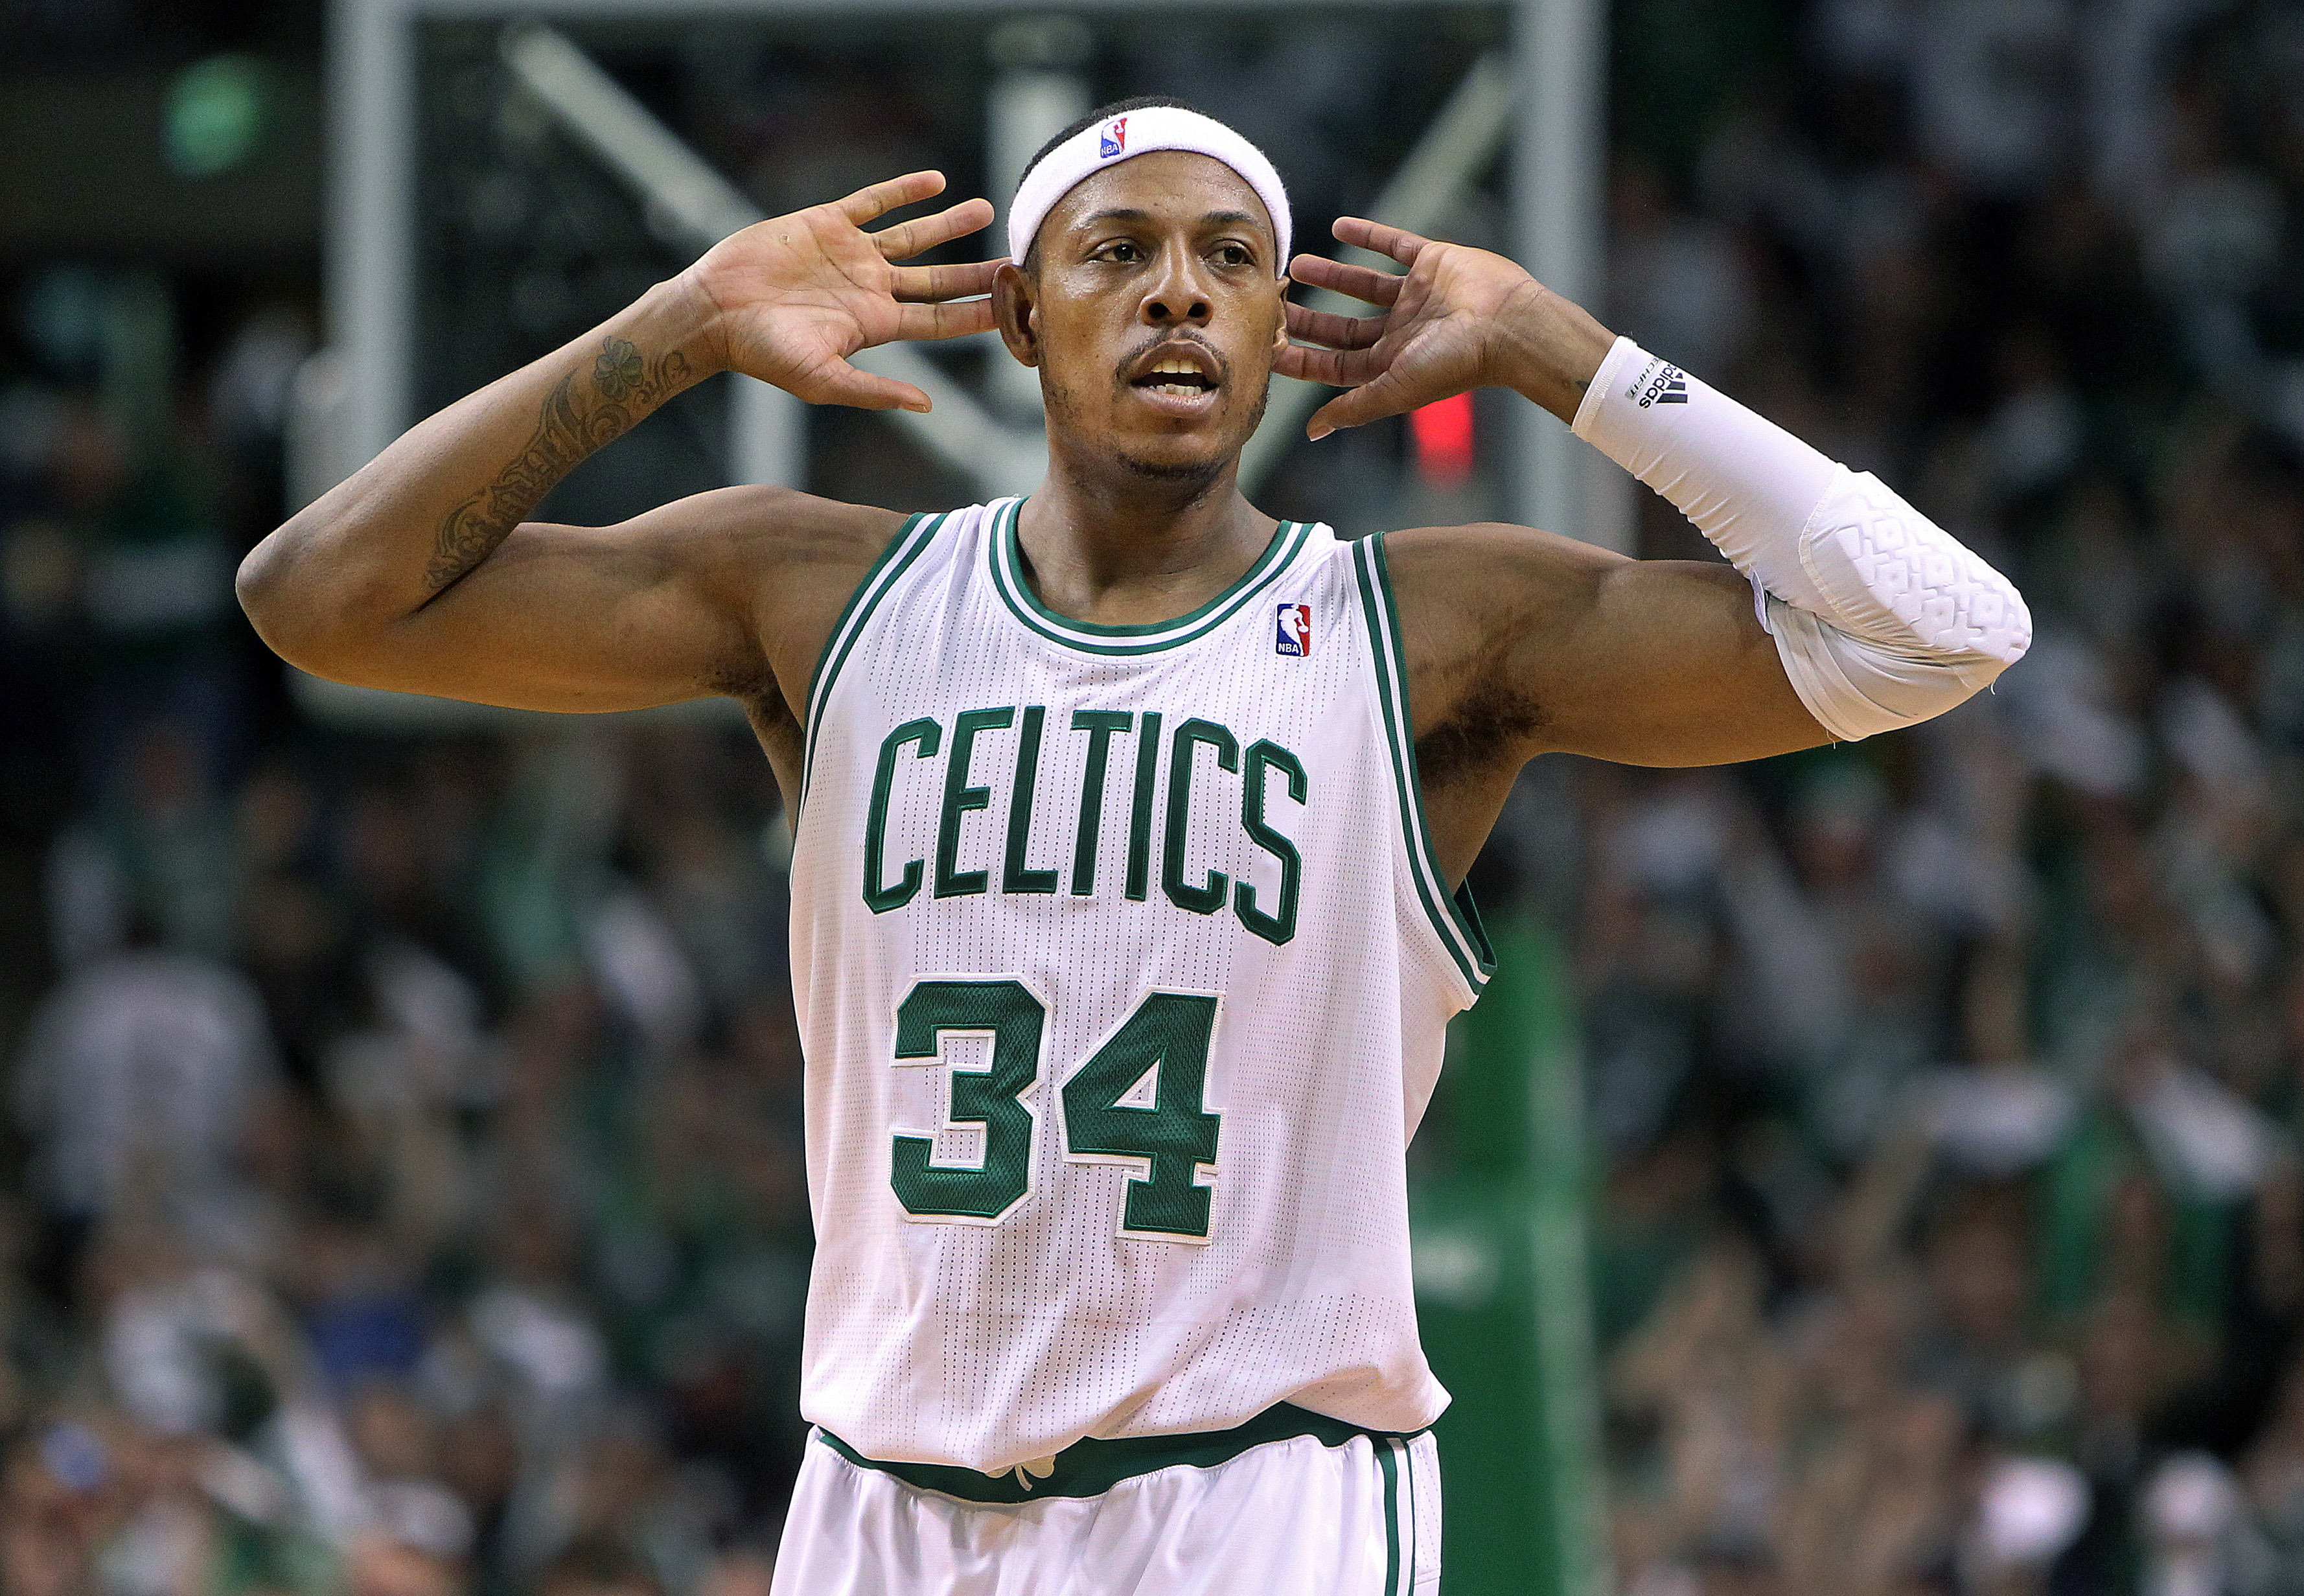 Rocky and remarkable: Celtics great Paul Pierce's unbelievable